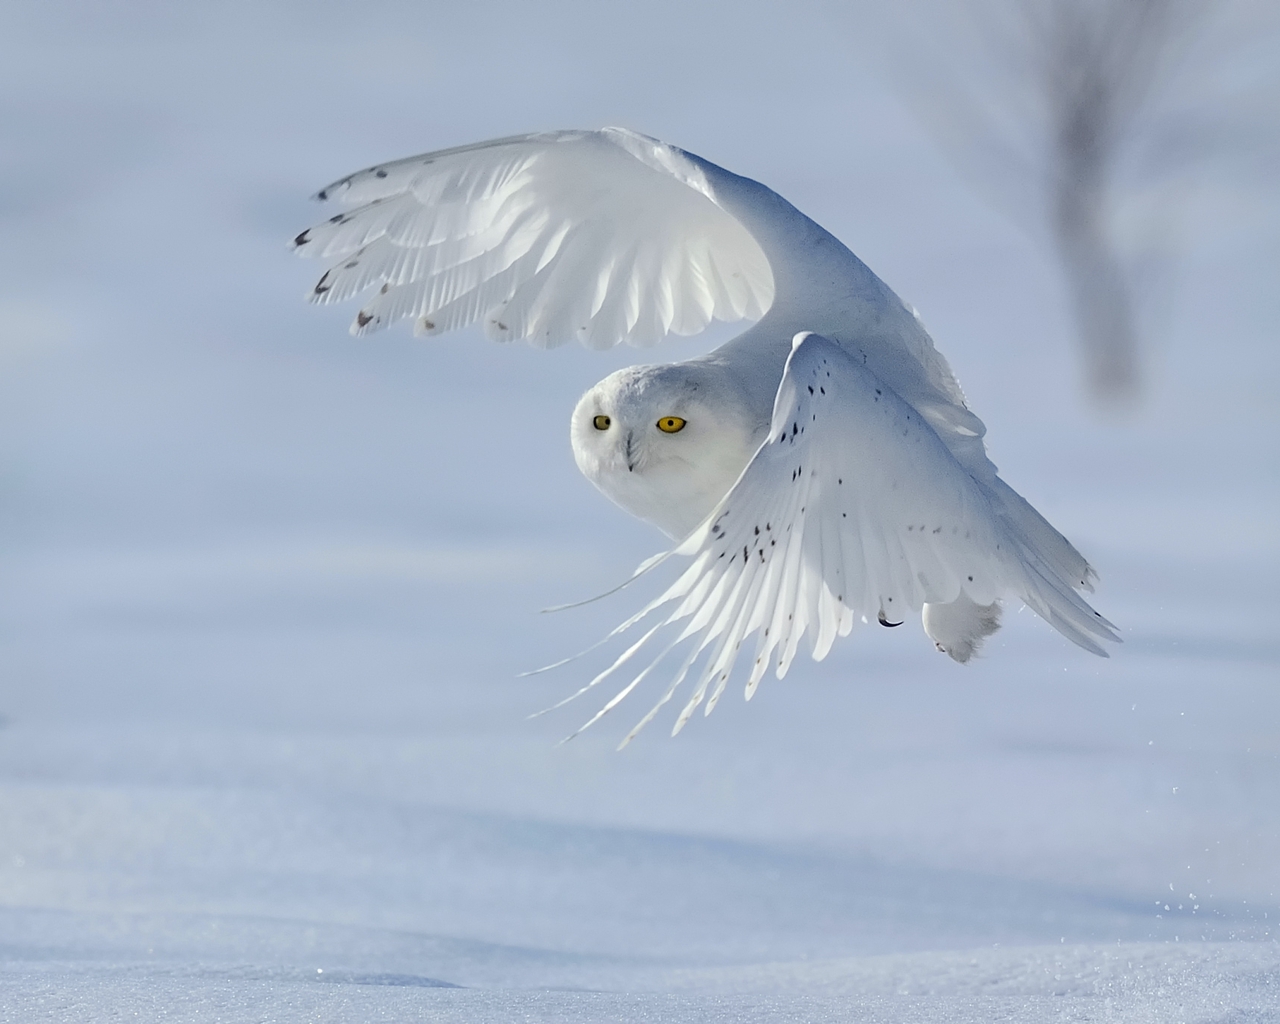 Image: White owl, winter, snow, bird, snowy owl, wings